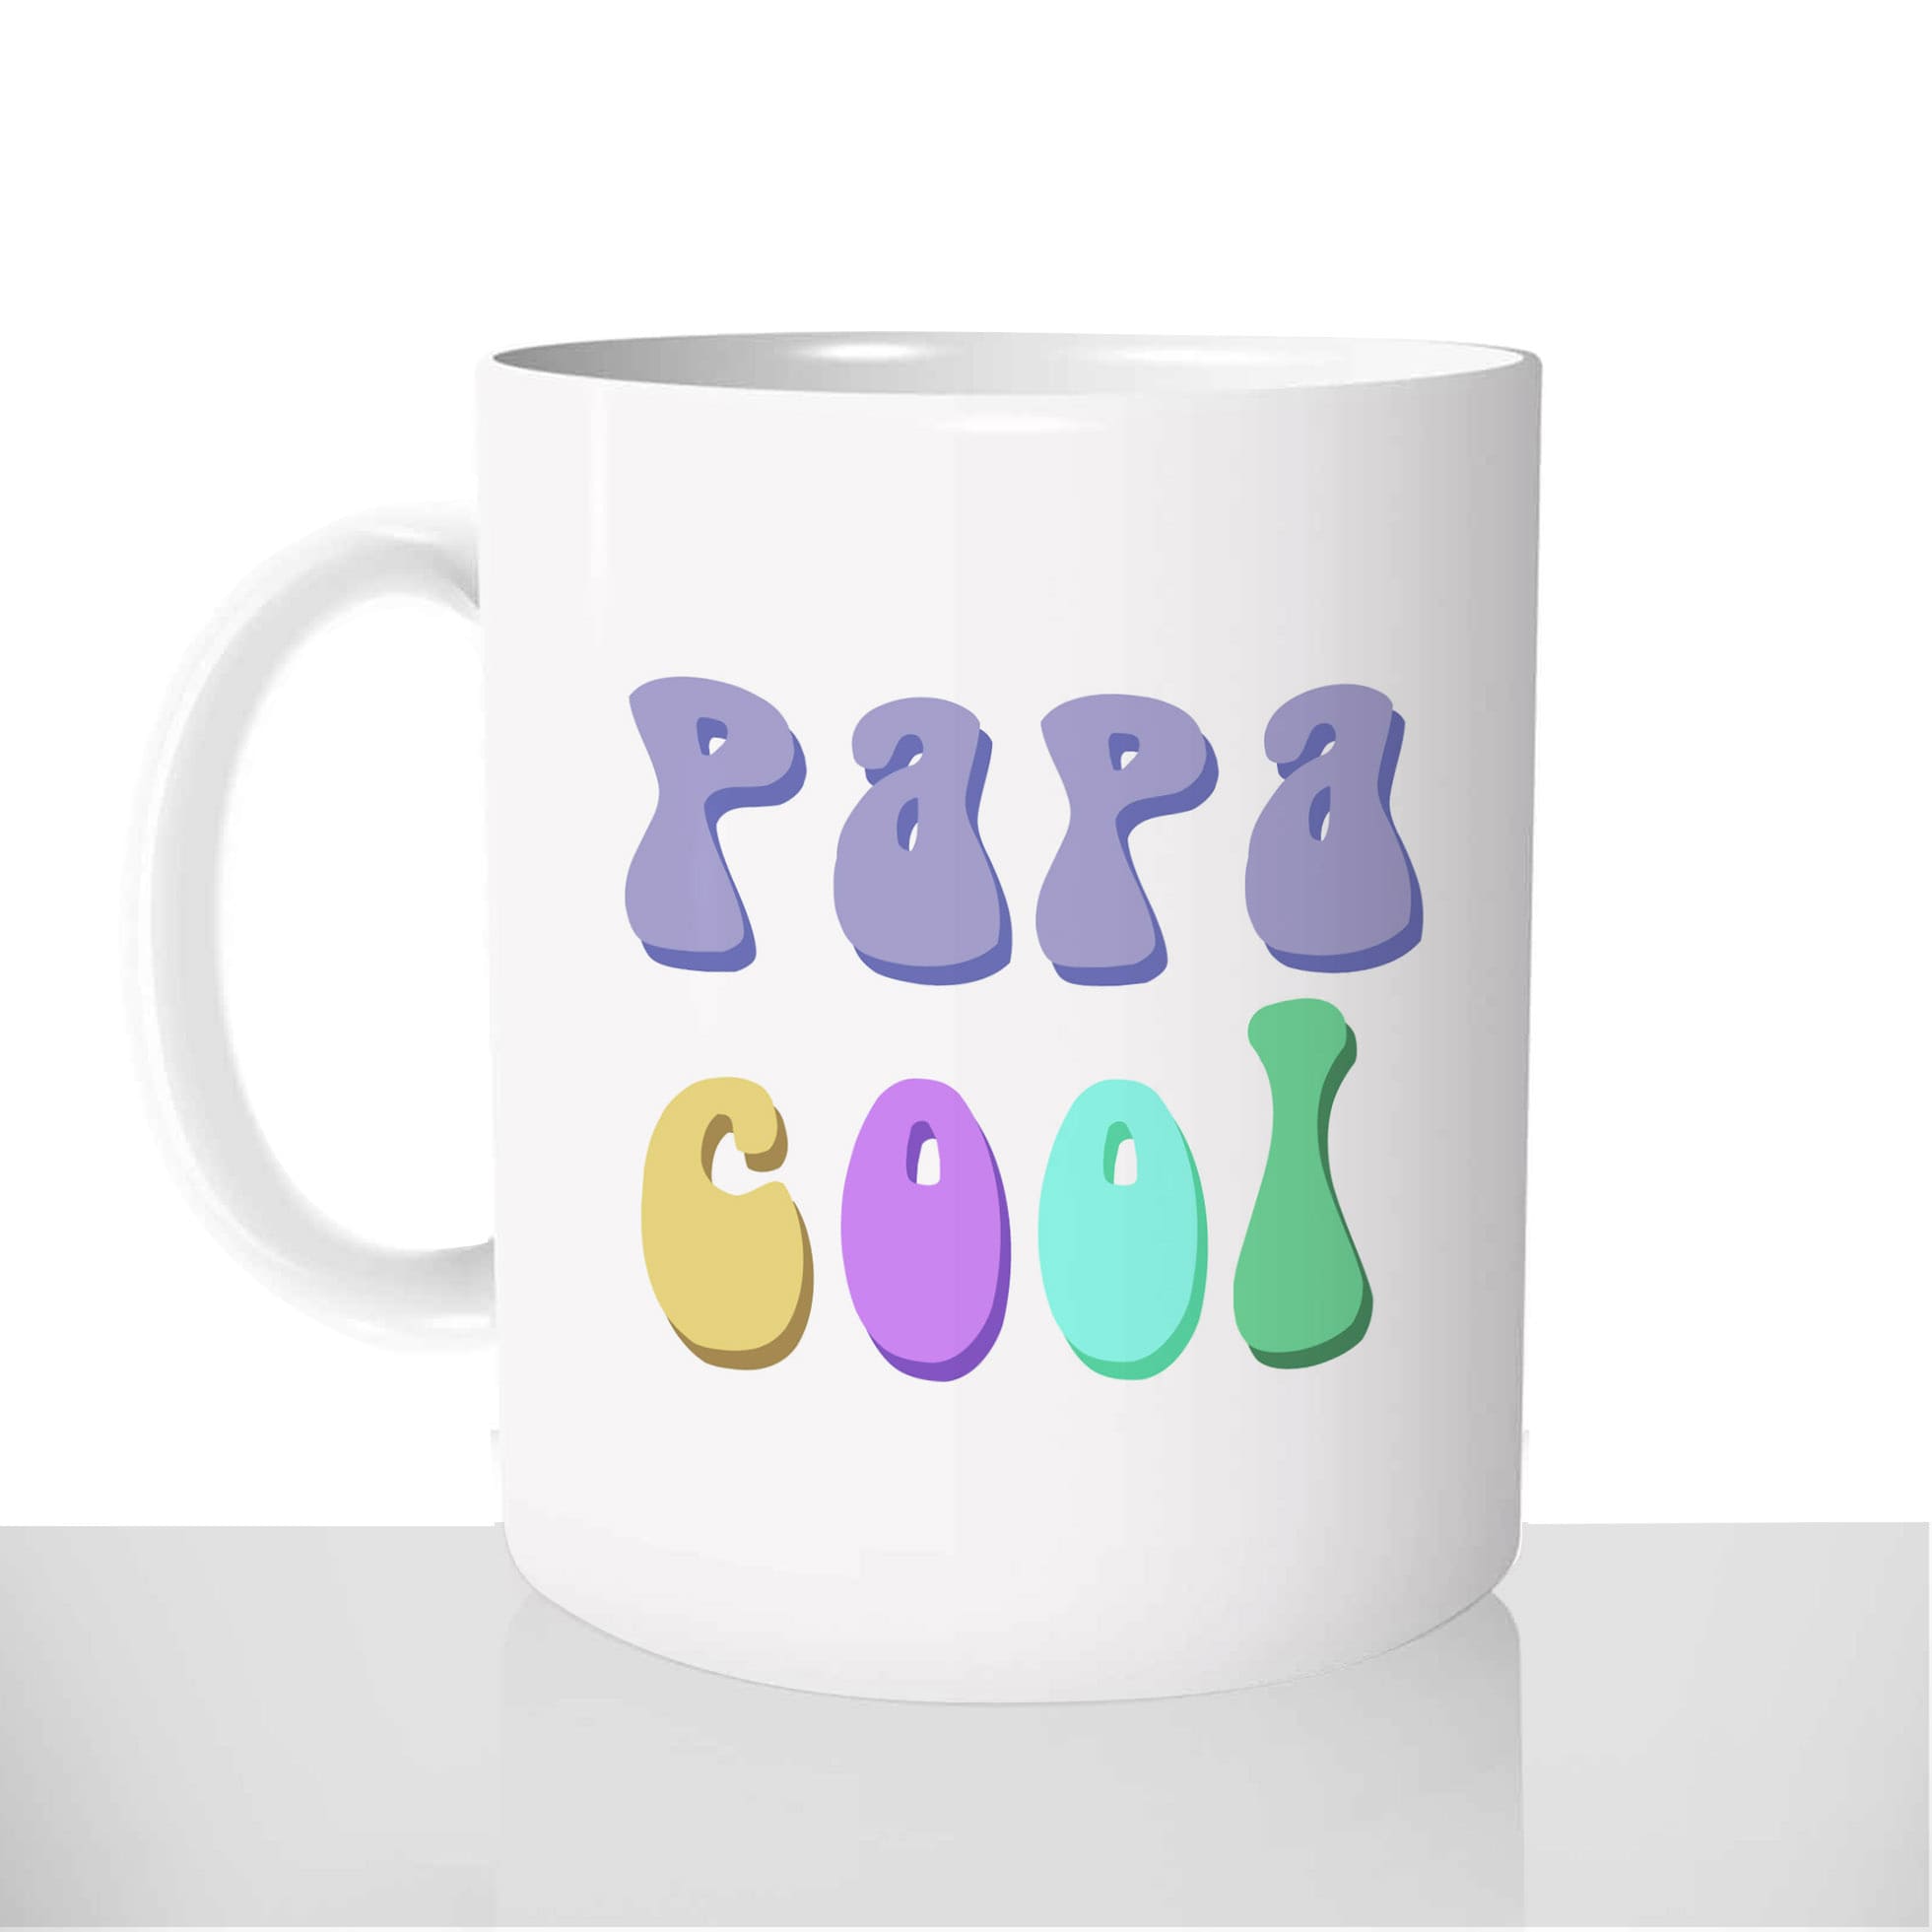 mug-blanc-céramique-11oz-france-mugs-surprise-pas-cher-papa-cool-fete-des-peres-peace-and-love-amour